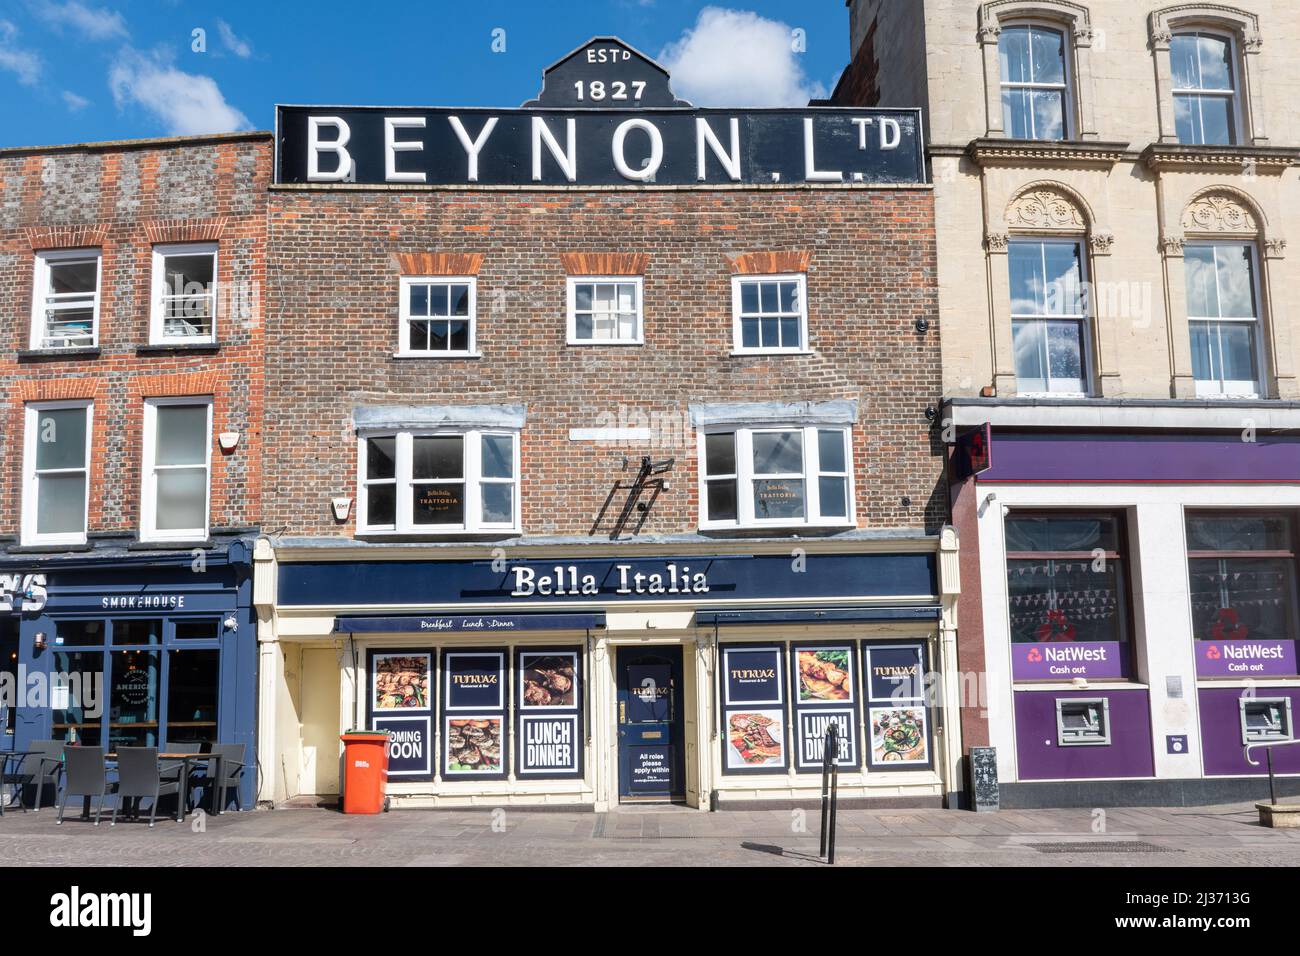 Edificio storico Beynon Ltd a Newbury Market Place, Berkshire, Inghilterra, Regno Unito, ex negozio di tappeti fondato nel 1827, ora un ristorante italiano. Foto Stock